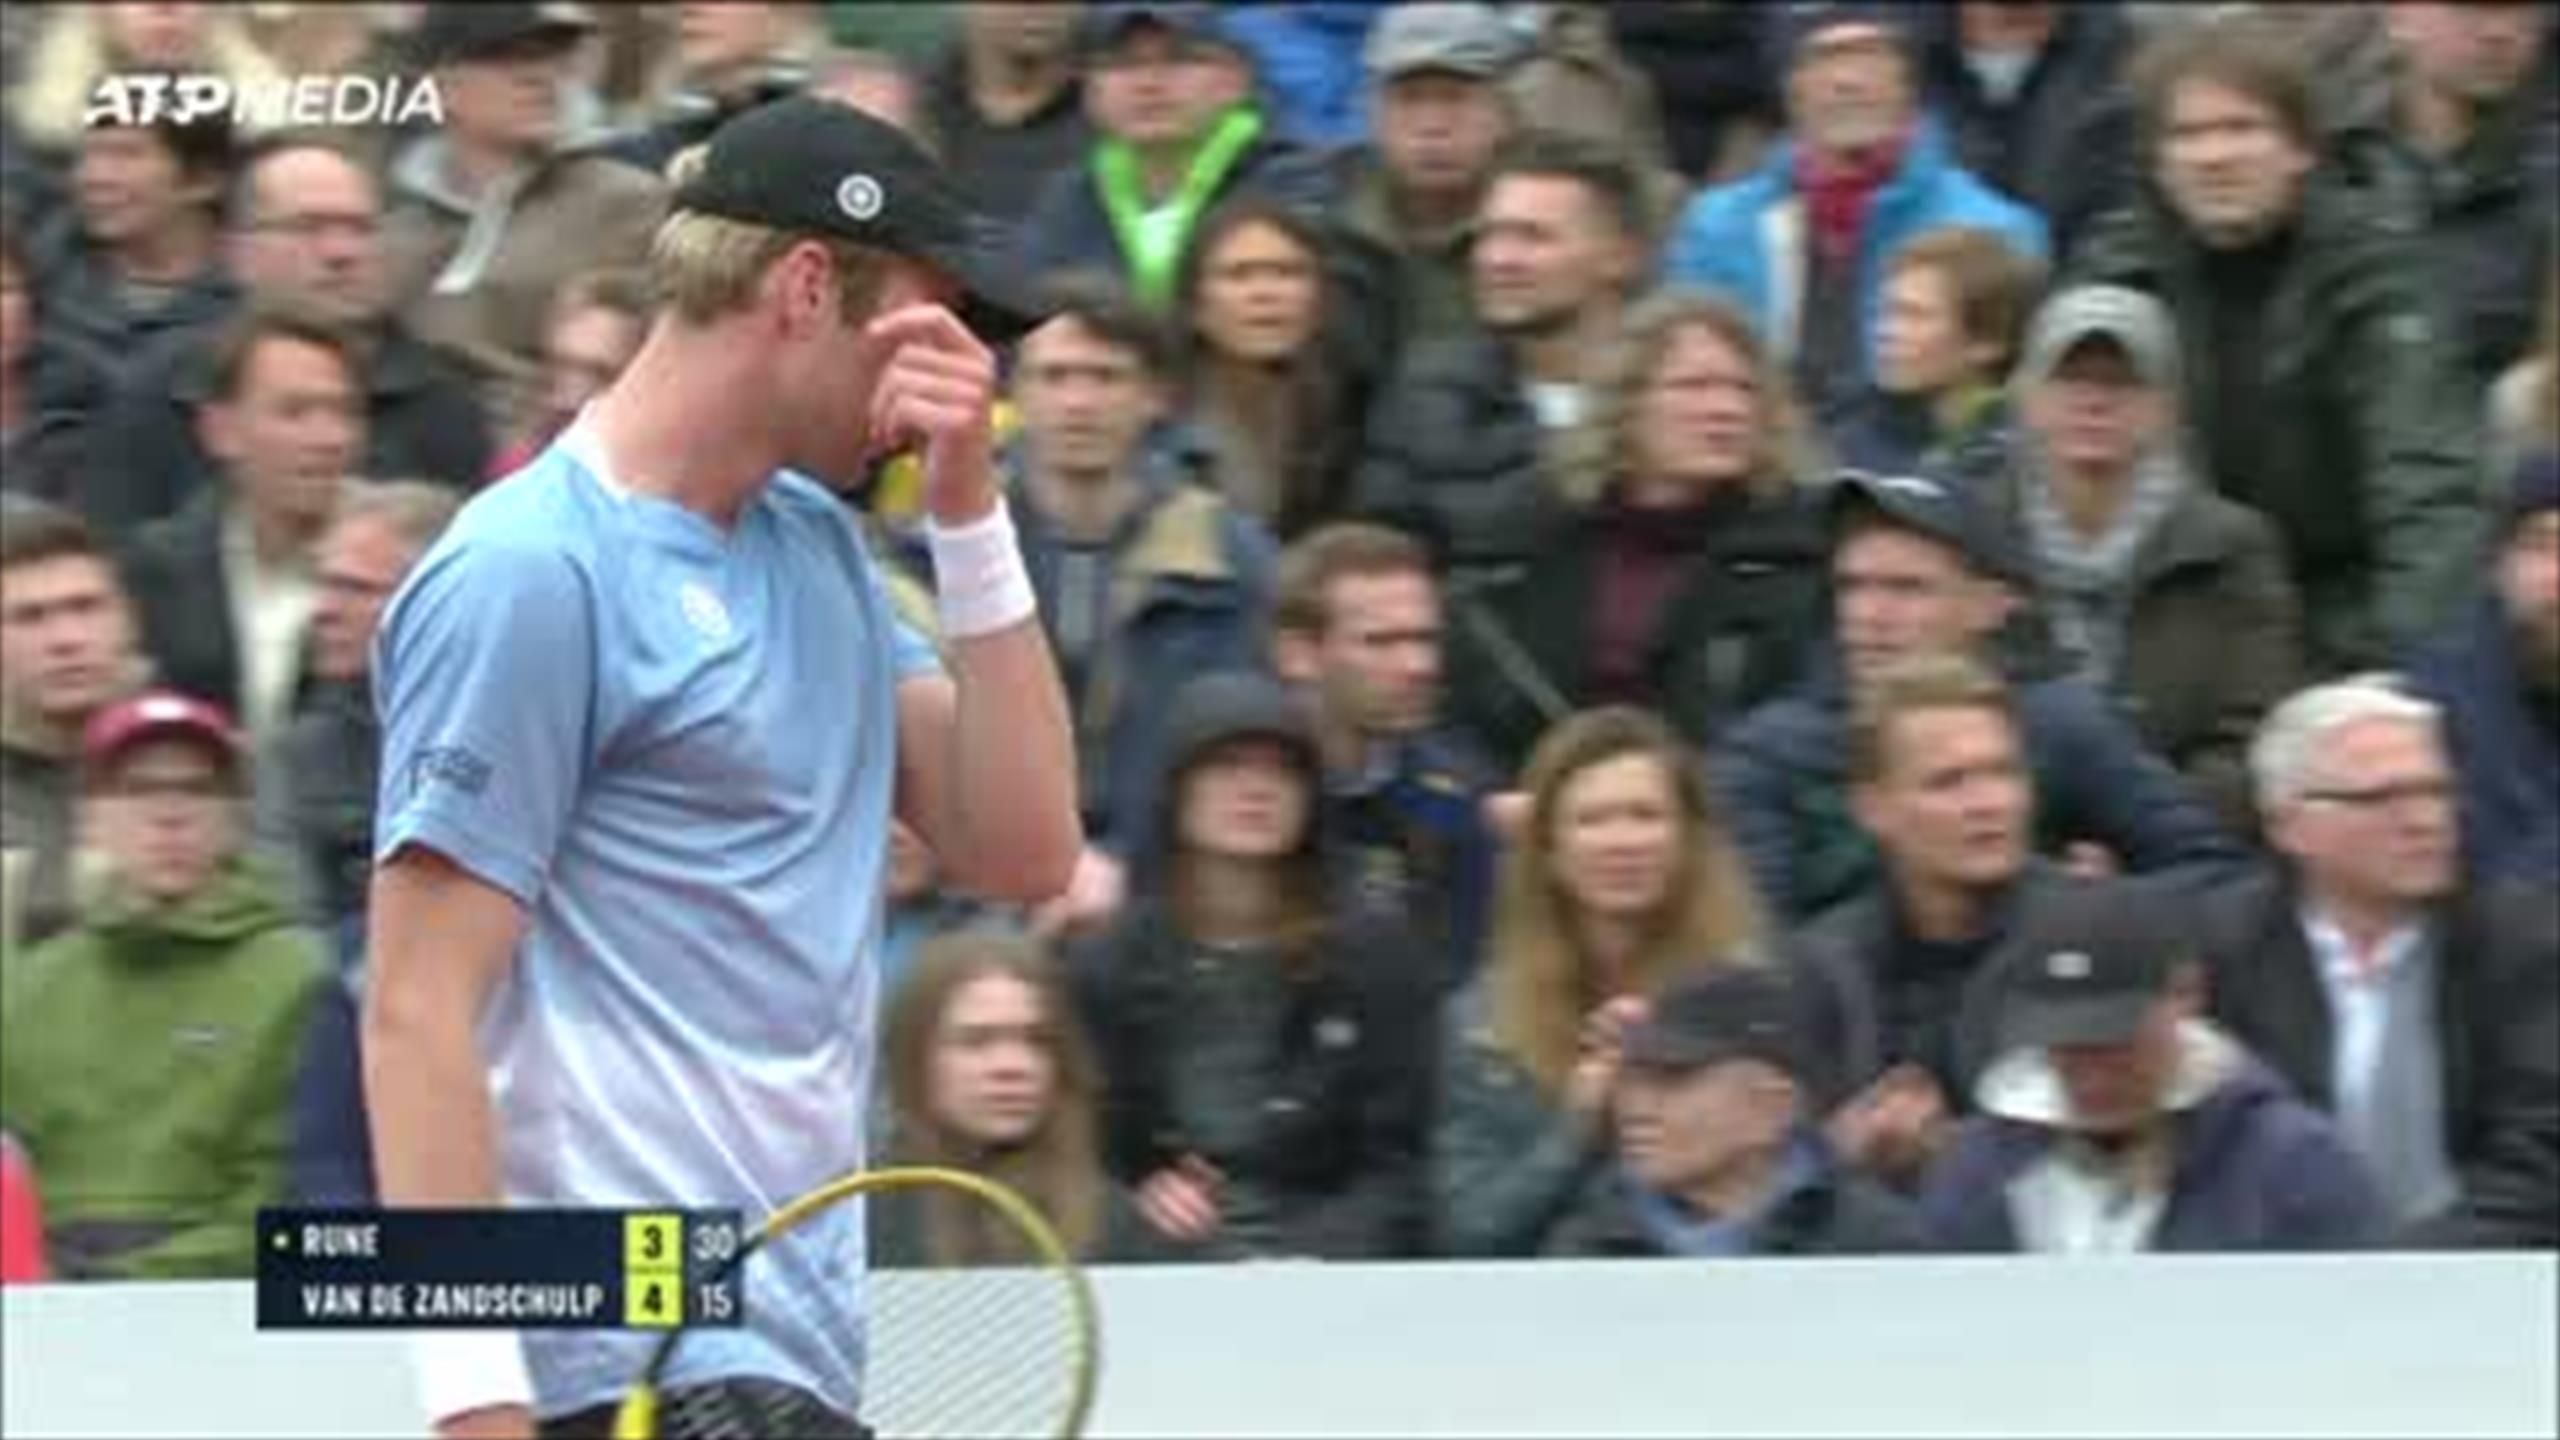 Holger Rune wins in Munich as Botic van de Zandschulp retires injured - Tennis video